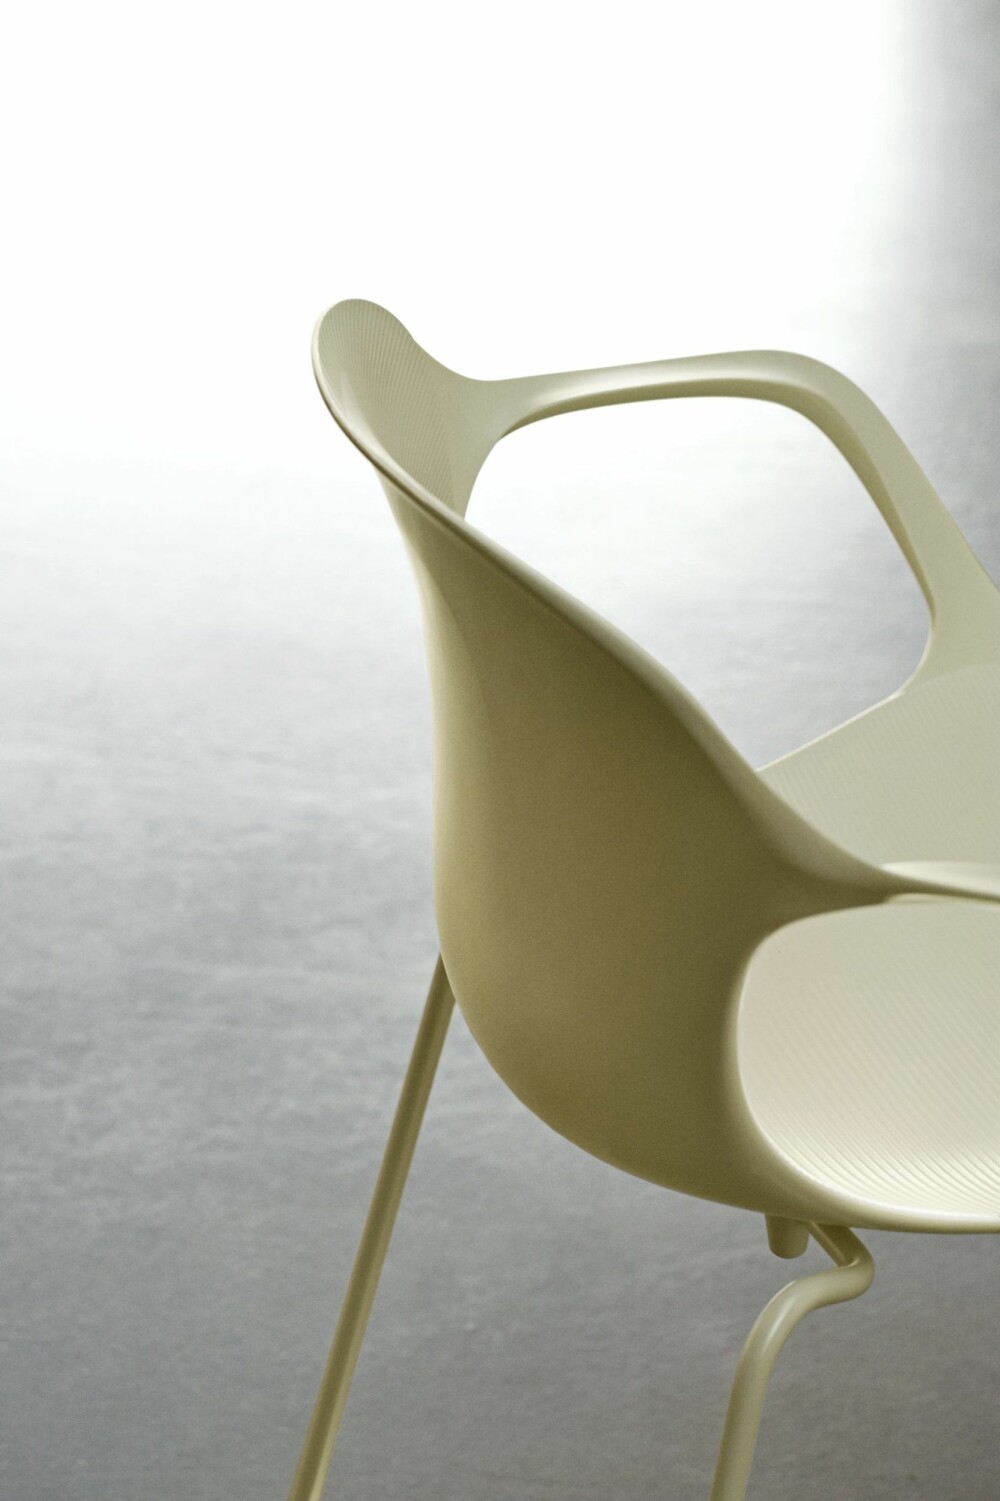 RAFFINERTE RILLER: Plaststolen NAP fra Fritz Hansen er designet av Kasper Salto. Overflaten er preget av små riller, som gir et spennende grafisk uttrykk, bedre ventilasjon og økt friksjon.